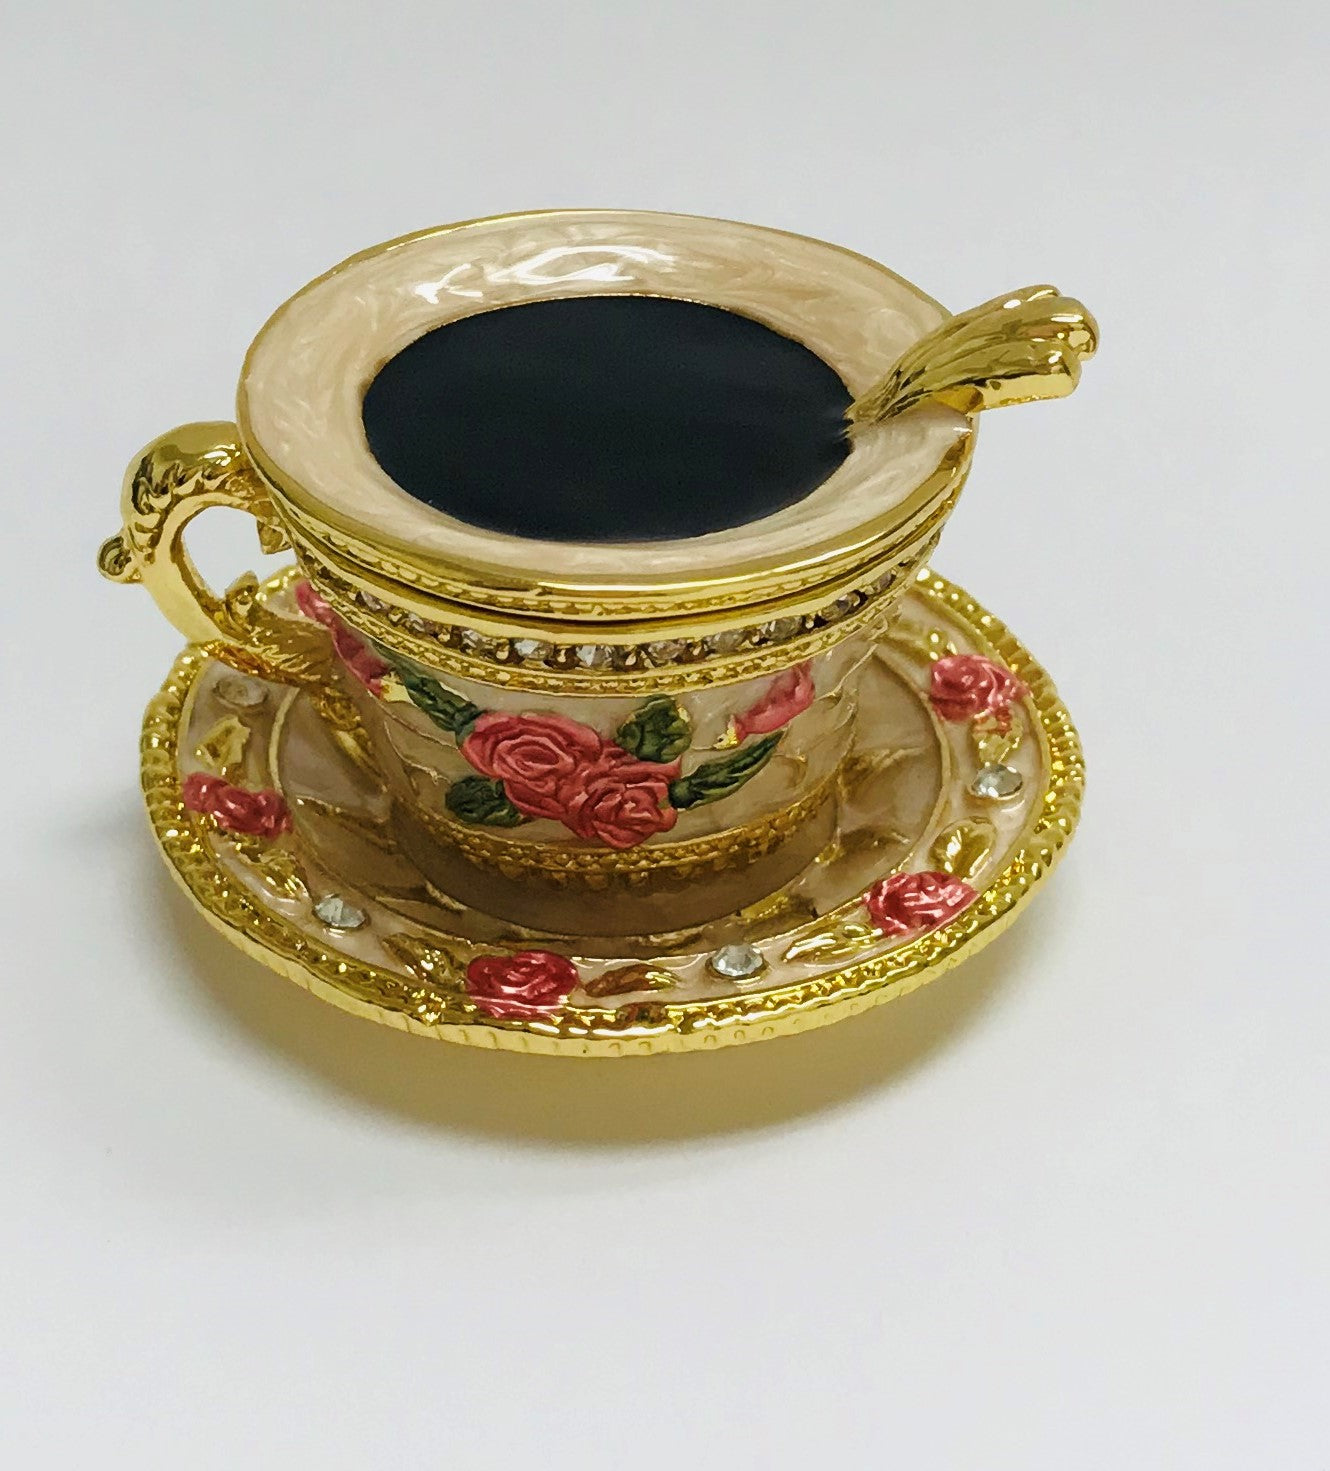 Cristiani Collezione Tea time Cup Trinket Box.